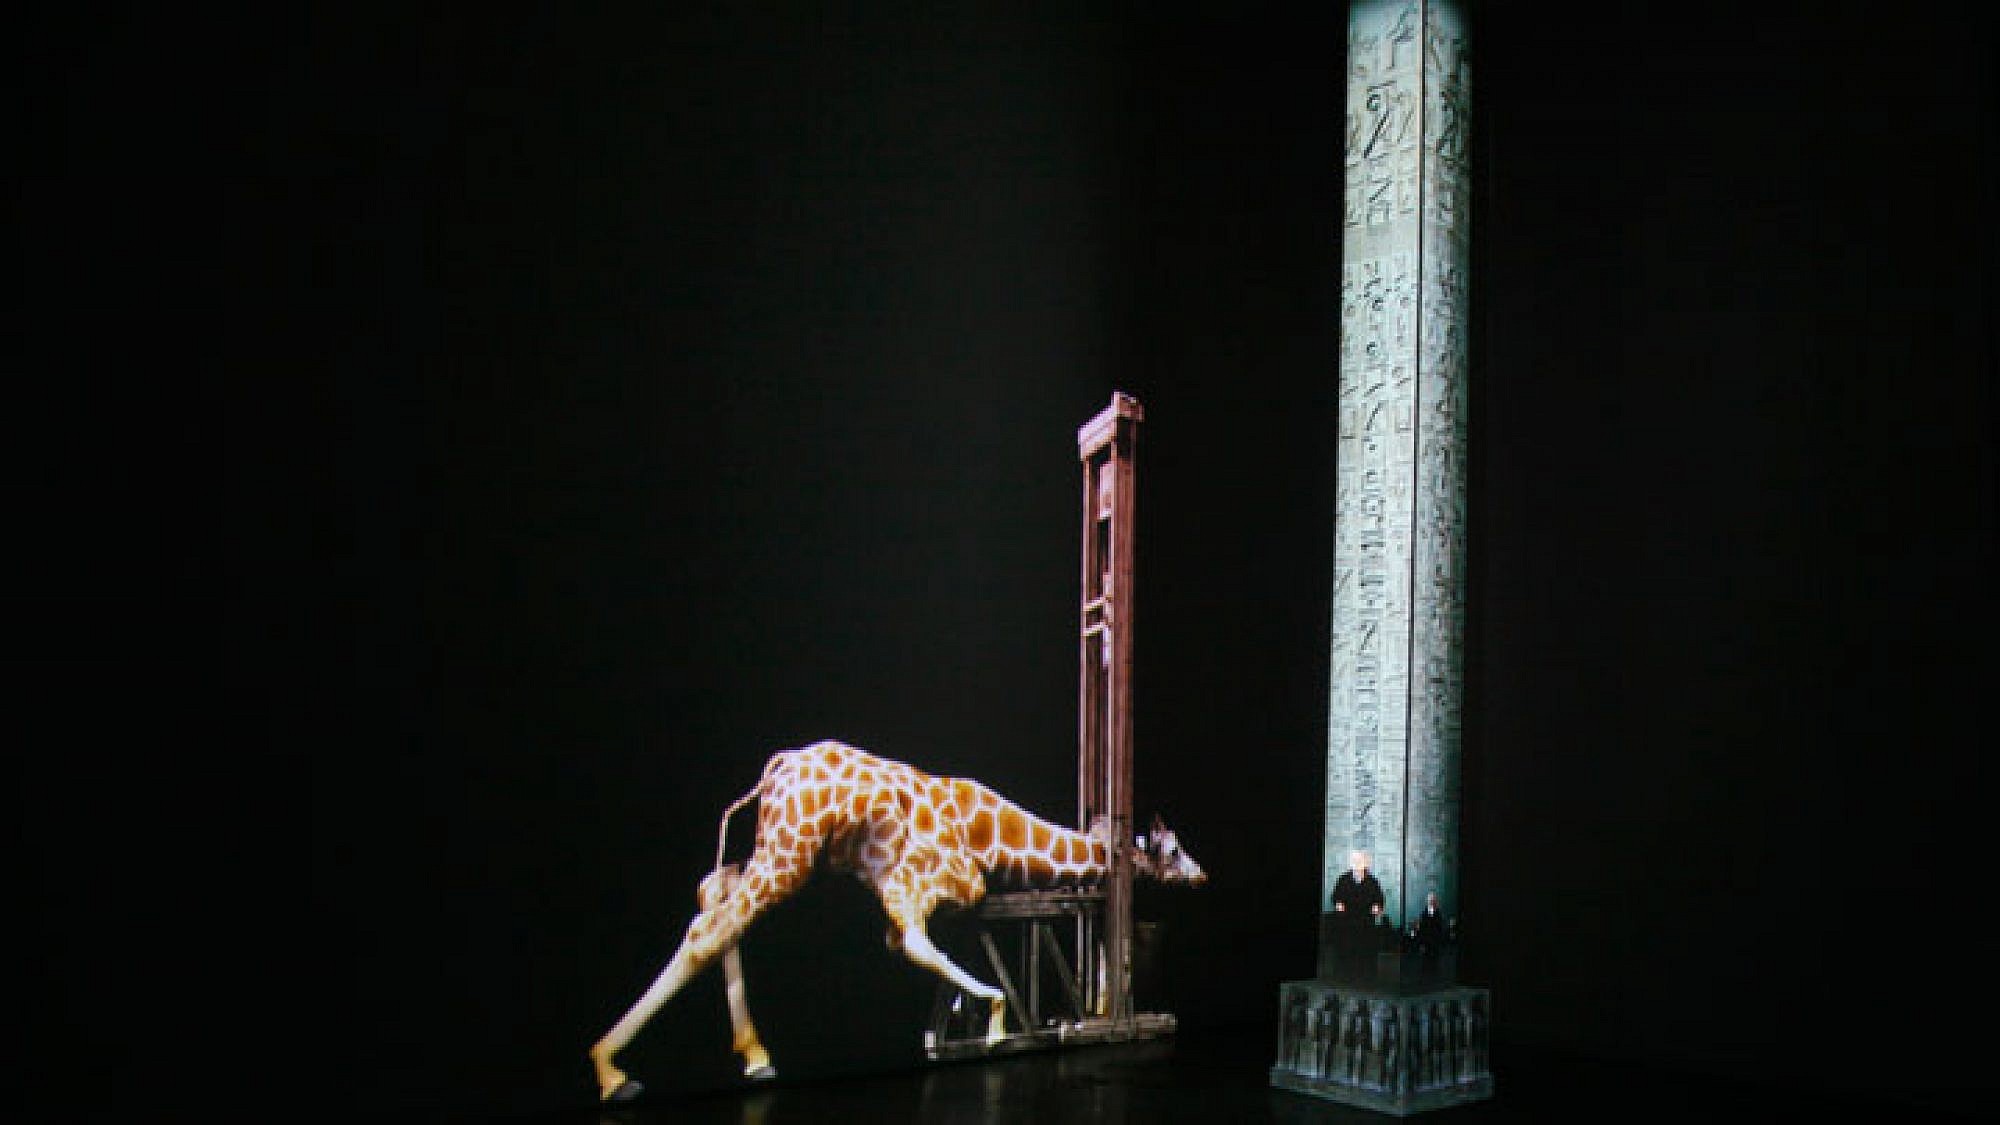 פרט מס' 1 מתוך מוזיאון התמימות של המונומנטים העקורים: "אובליסק לוקסור", 2014, מיצב וידאו בשני ערוצים, 3:20 דקות, הקרנה מחזורית. צילום: רננה נאומן